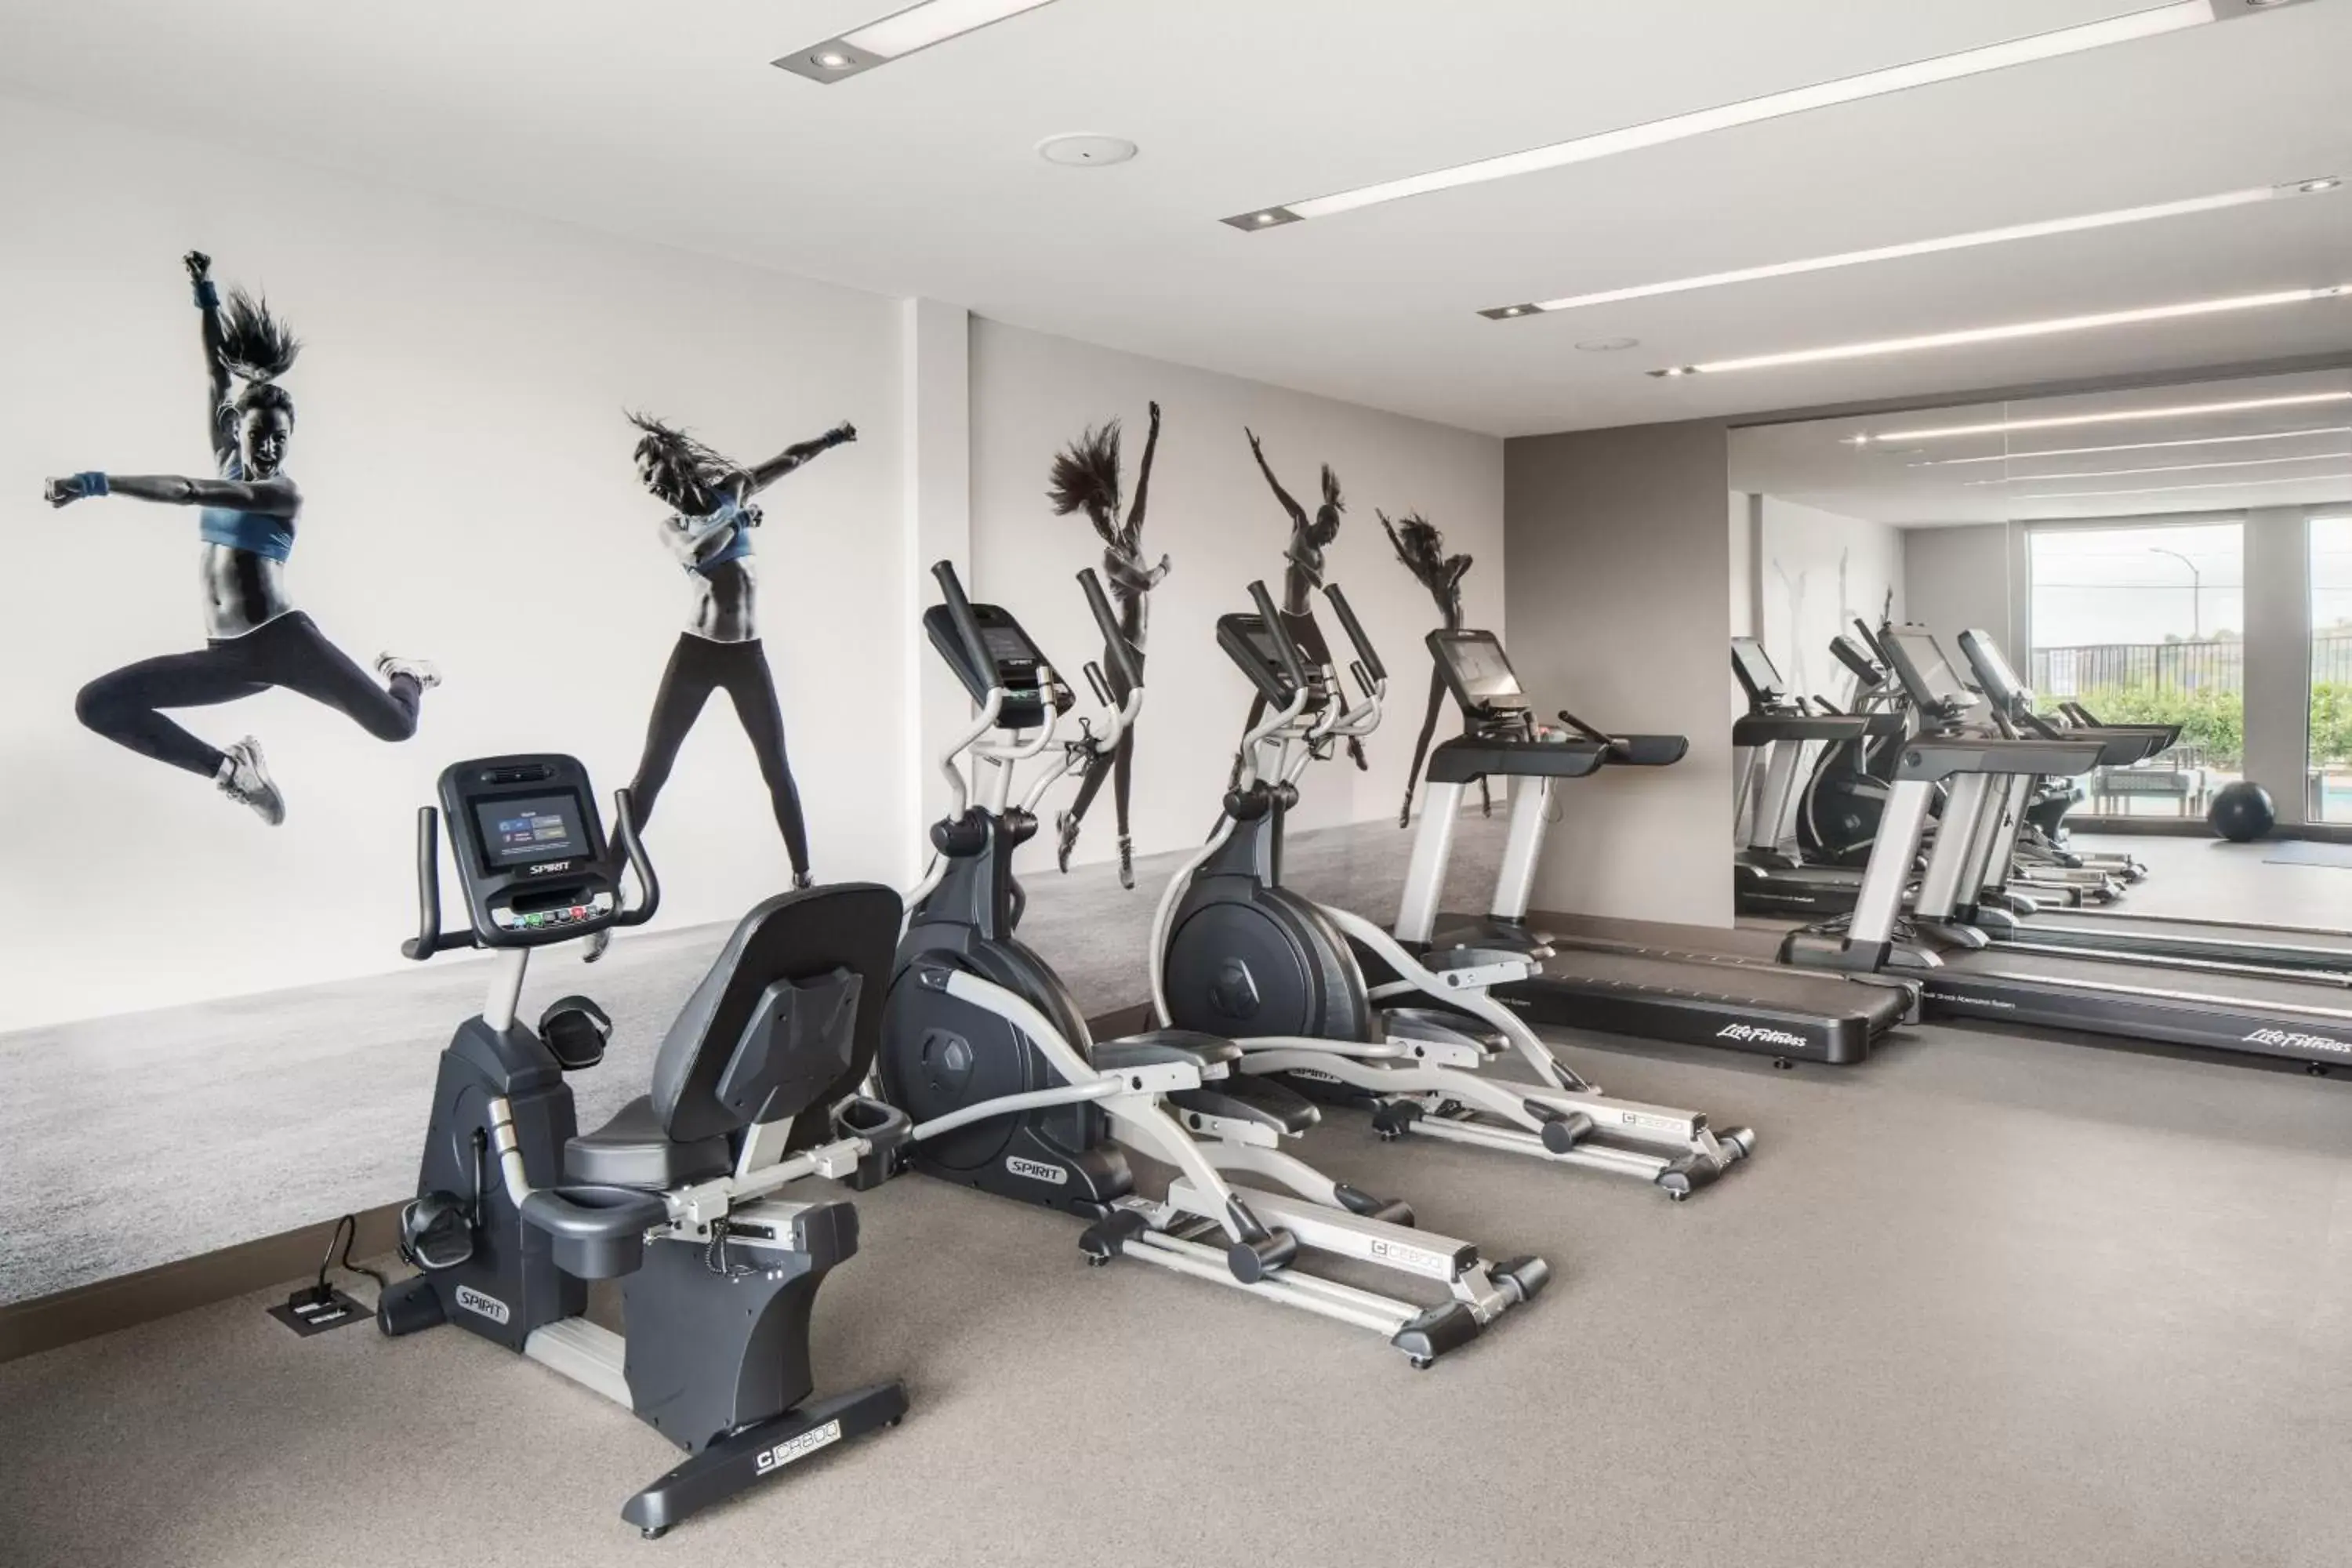 Fitness centre/facilities, Fitness Center/Facilities in Ayres Hotel Vista Carlsbad